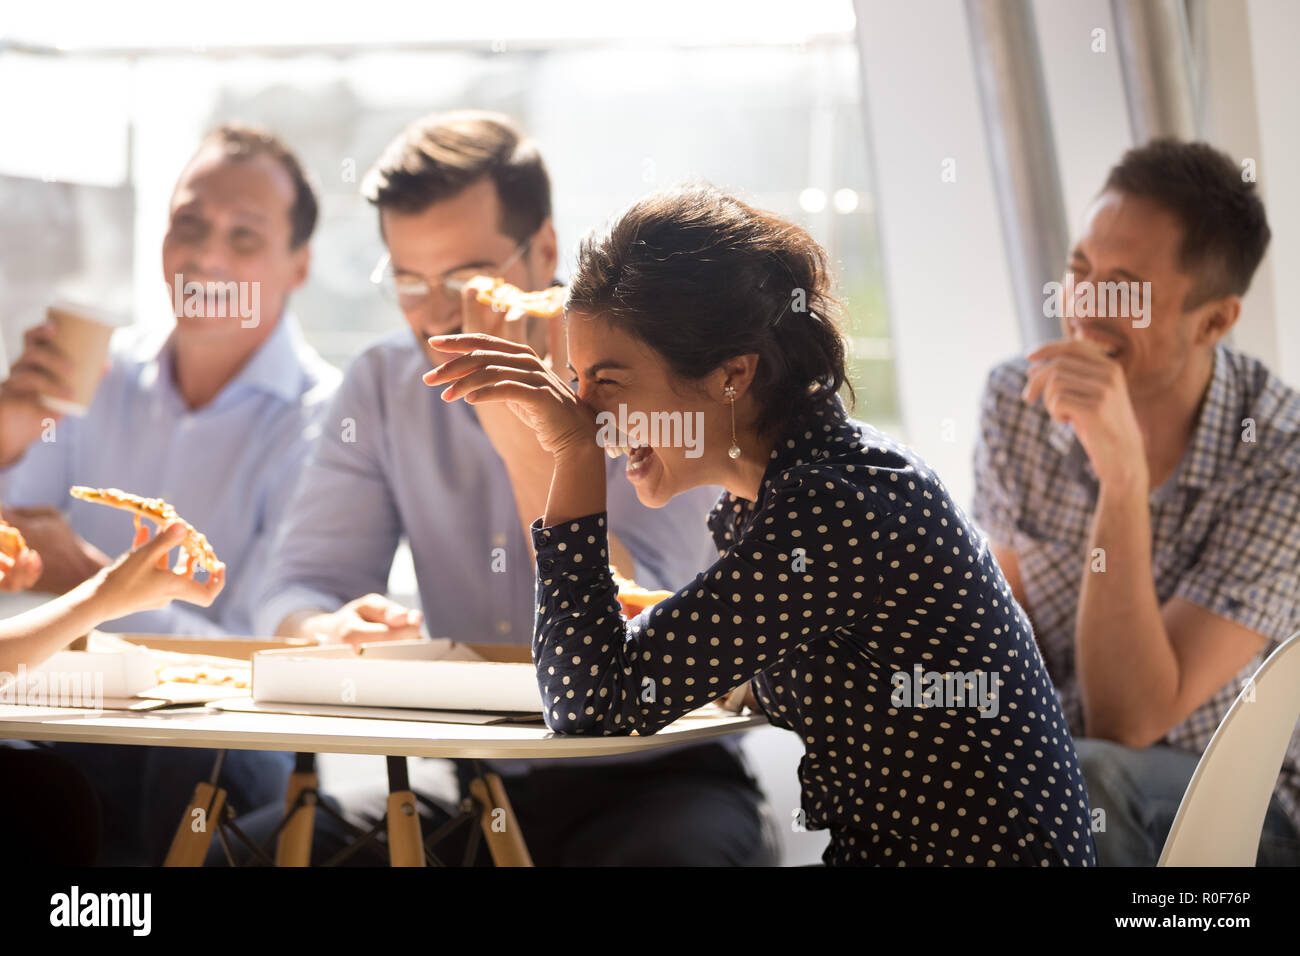 Indian woman laughing eating pizza avec divers collaborateurs en off Banque D'Images